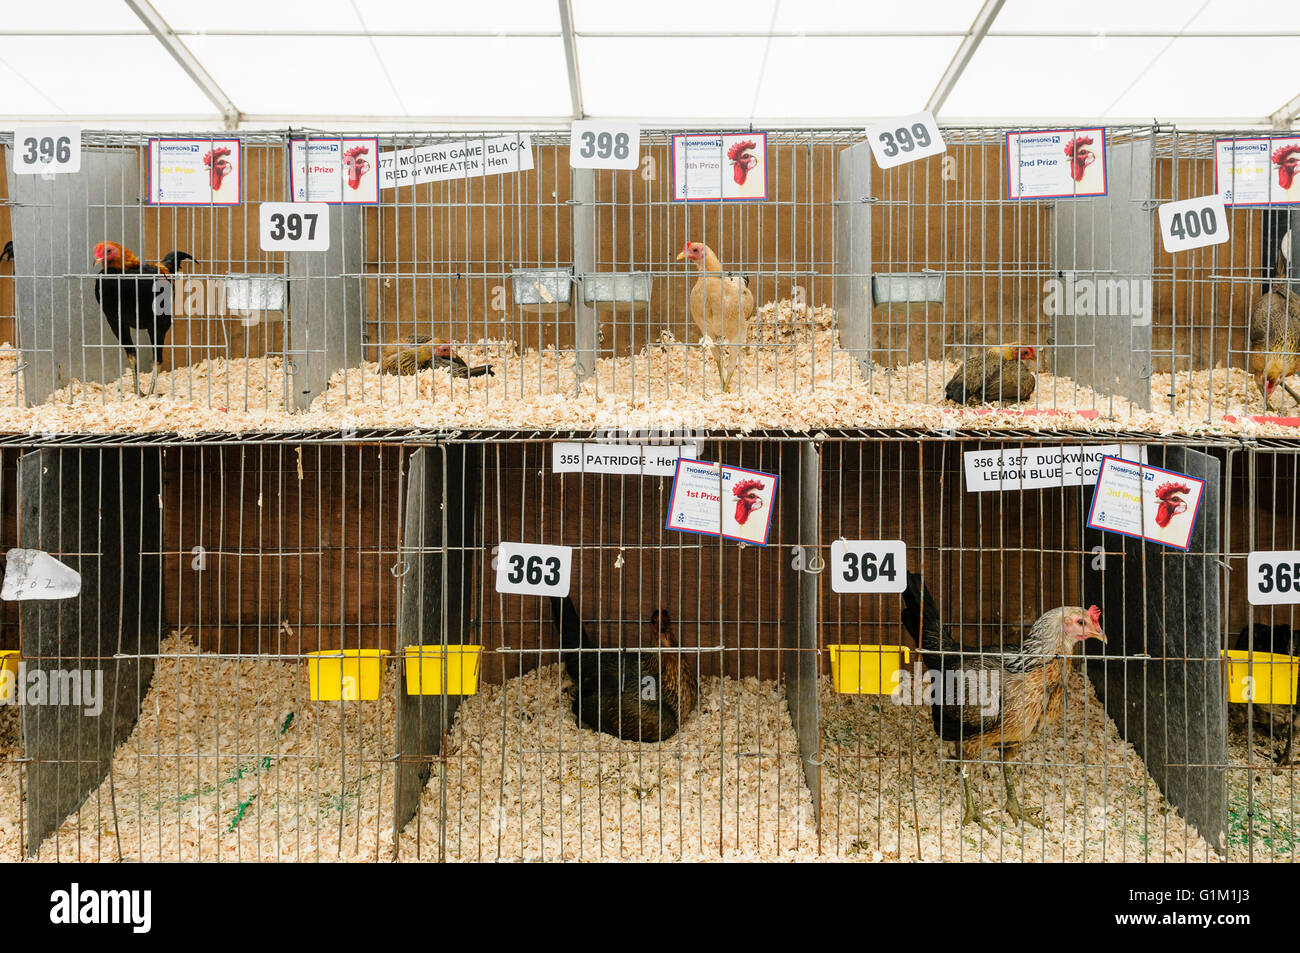 Razza rara galline in gabbie a uno spettacolo agricolo. Foto Stock